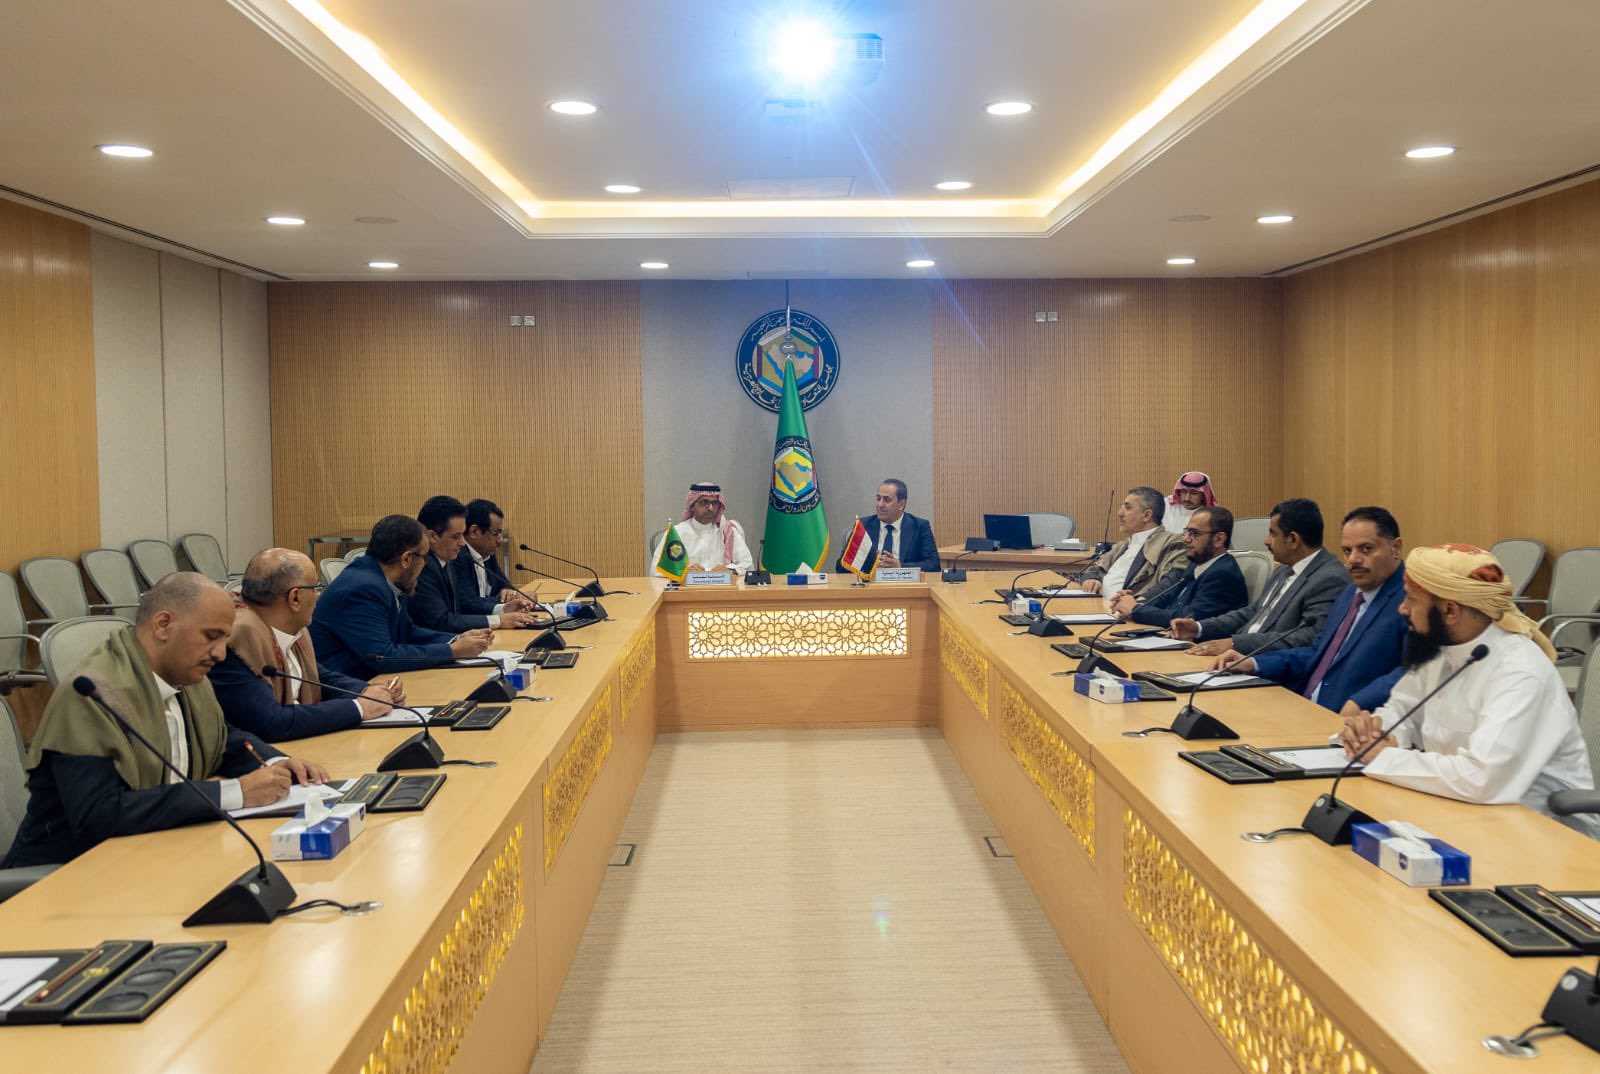 لقاء في “الرياض” بين بعثة مجلس التعاون الخليجي وتحالف الأحزاب اليمنية